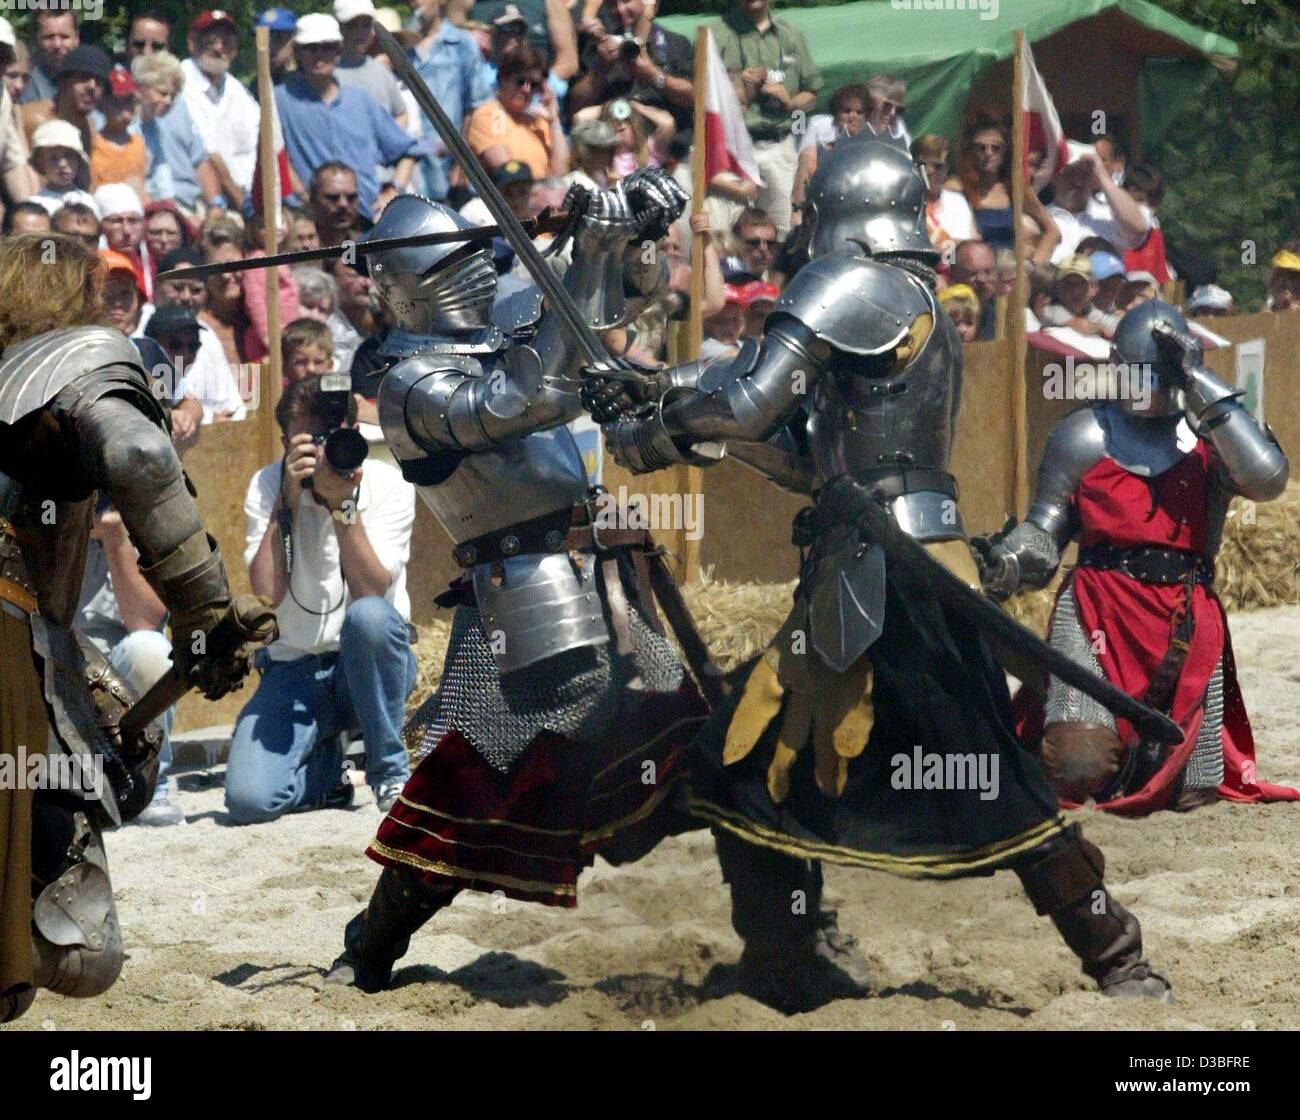 Knights fight Banque de photographies et d'images à haute résolution - Alamy